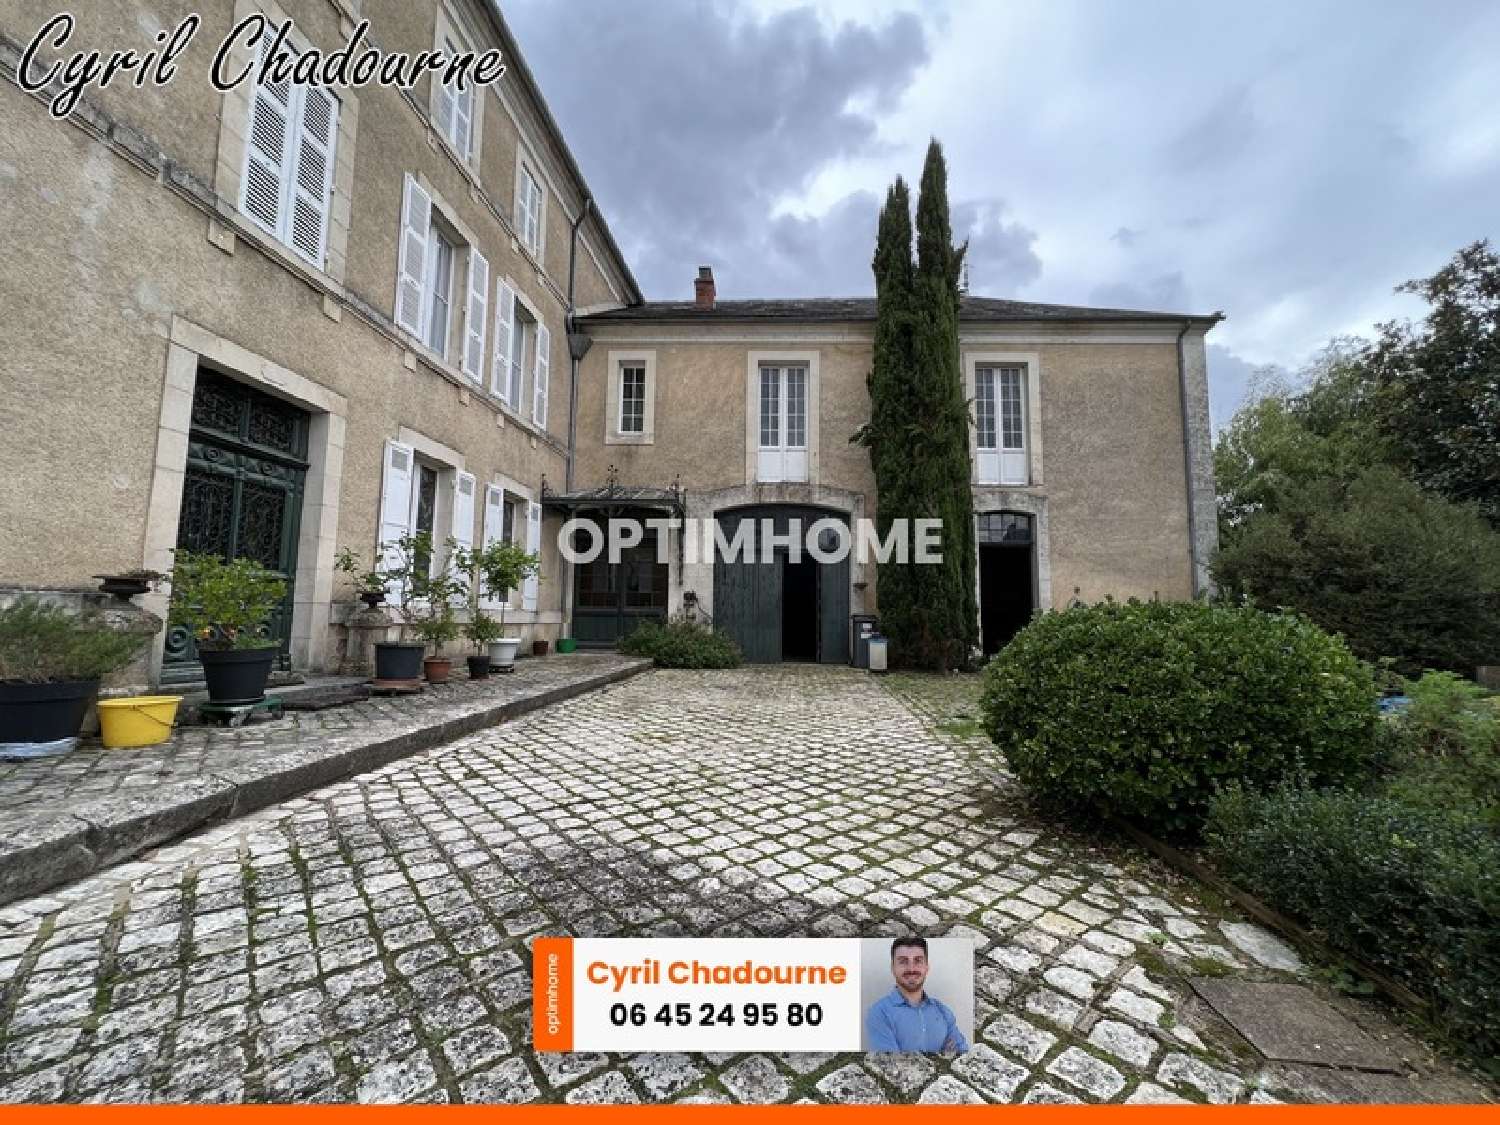  à vendre maison bourgeoise Nontron Dordogne 4